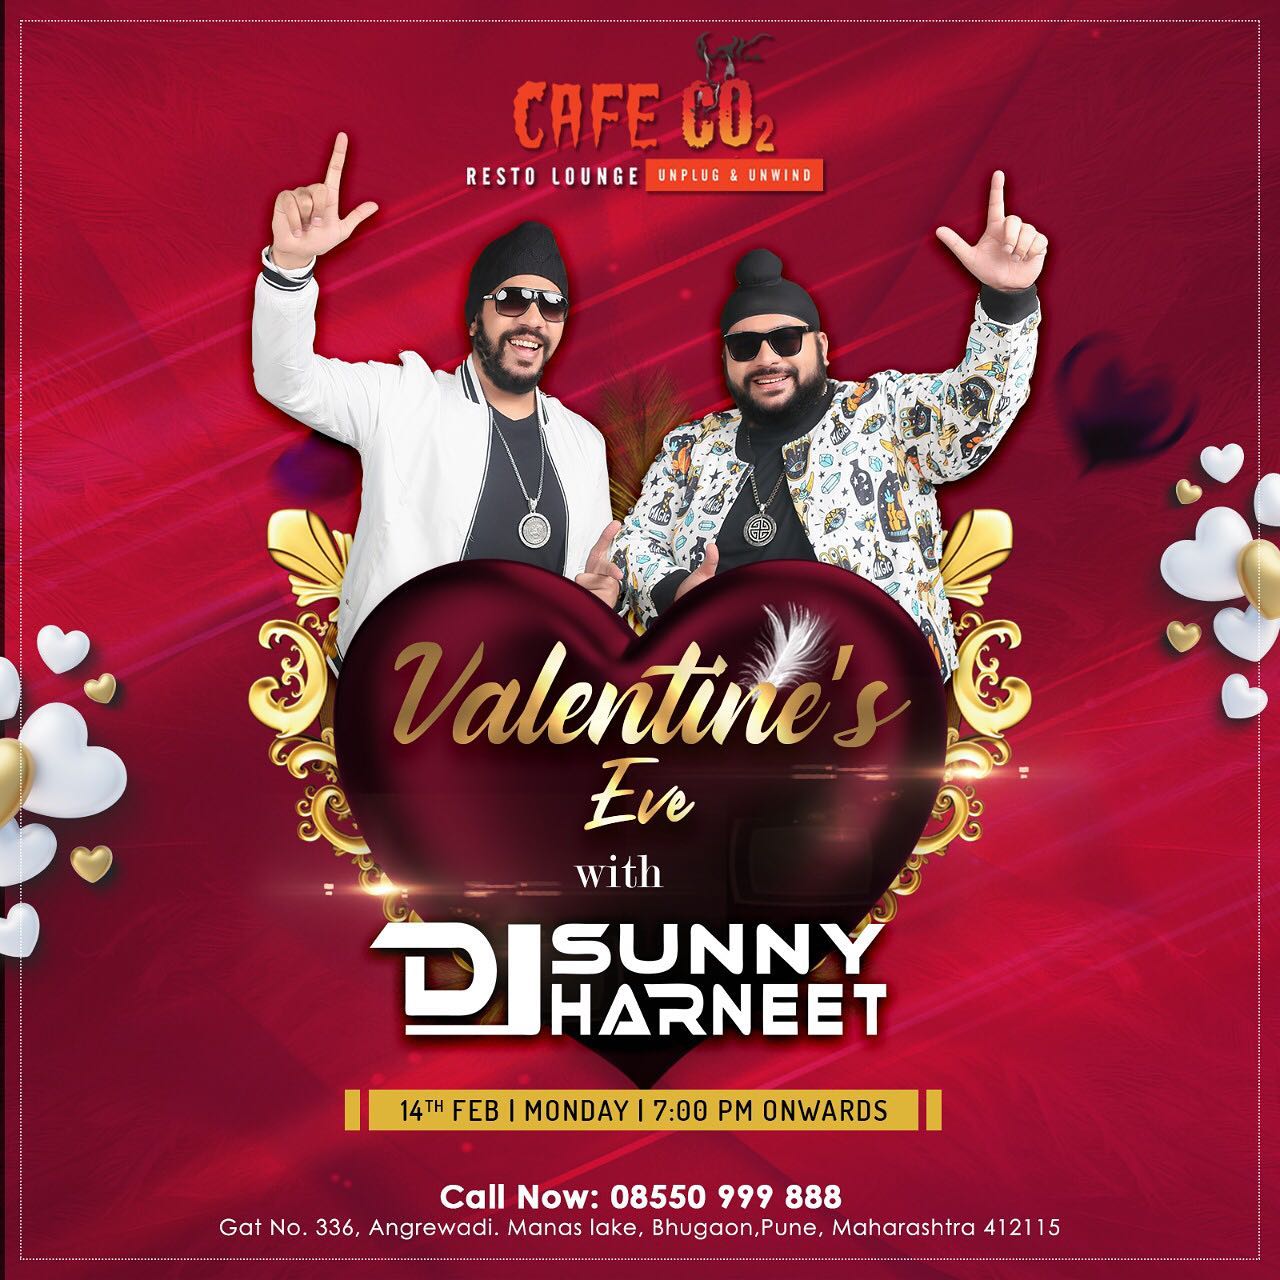 Valentine Eve At Cafe Co2, Pune, Maharashtra, India